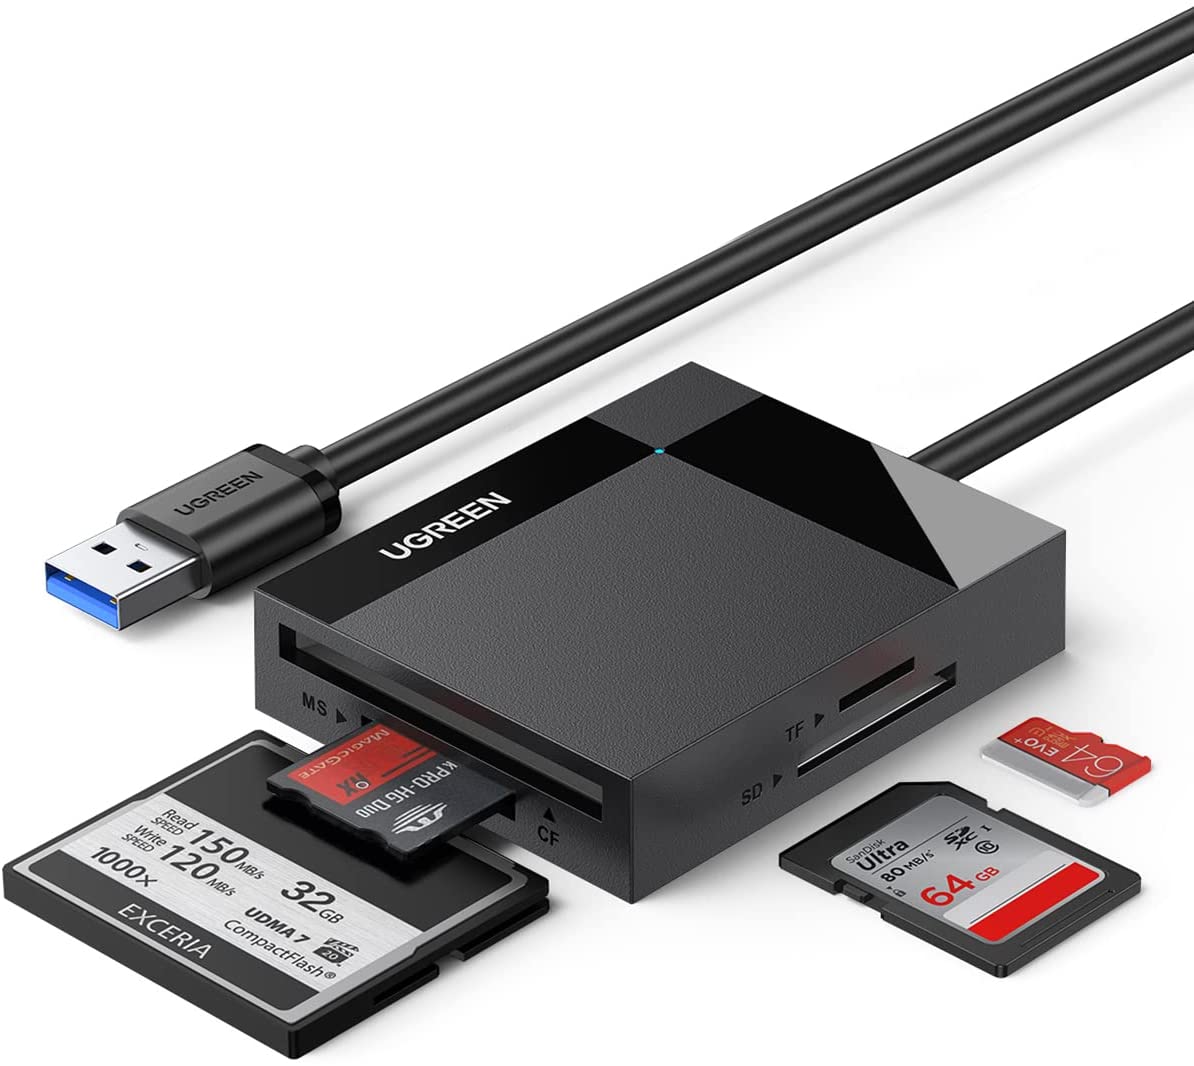 Lecteur de Carte SD Ugreen USB C USB 3.0 2 en 1 Adaptateur de